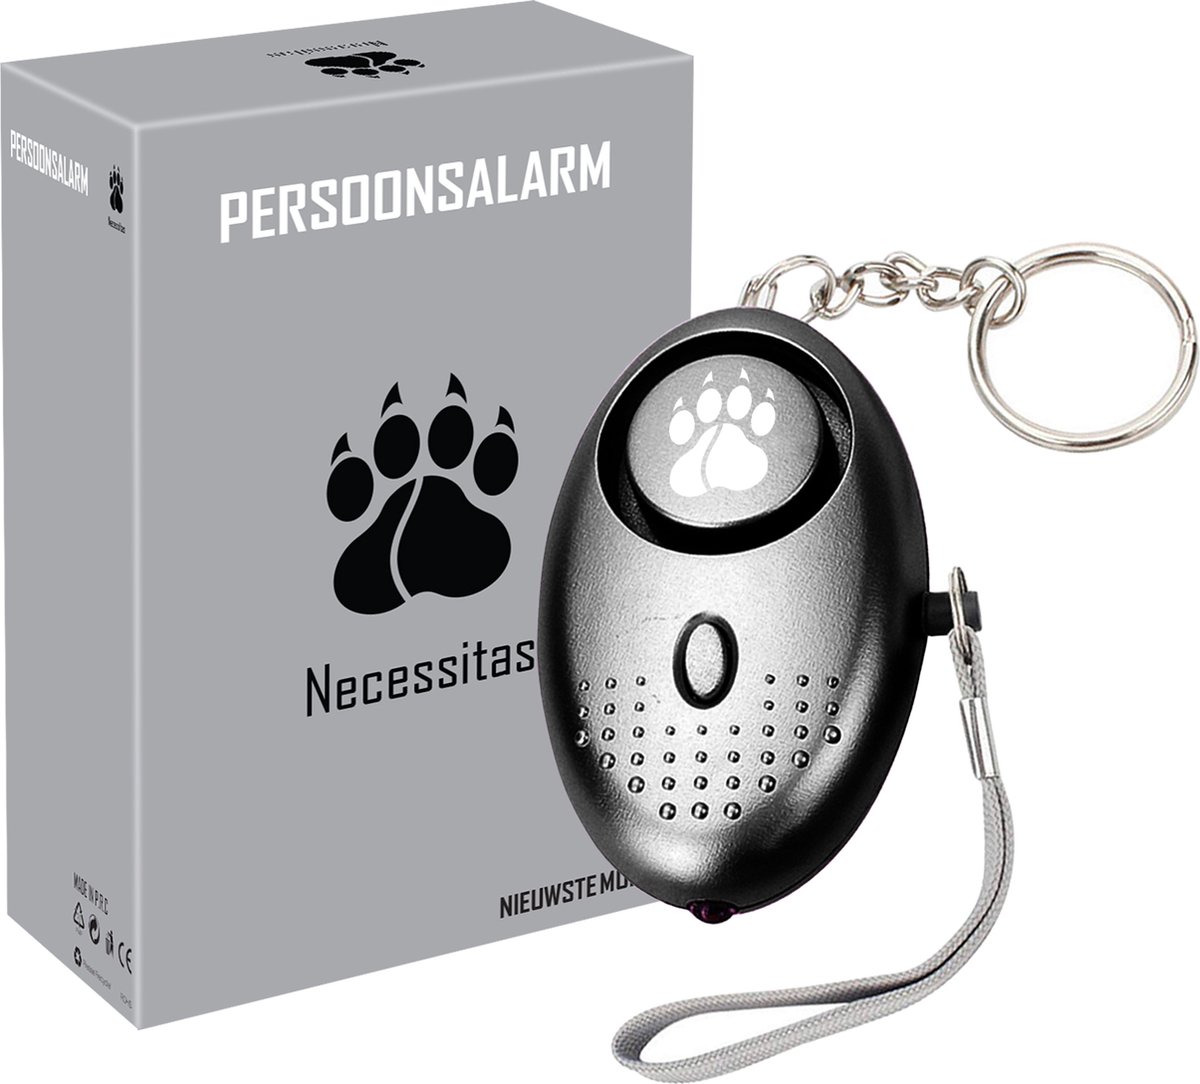 Necessitas ® Senioren Alarm Persoonlijk Alarmknop Sleutelhanger - Alarmsysteem 140DB Geluid - Draadloos Personal Alarm - Incl. Batterij - Necessitas